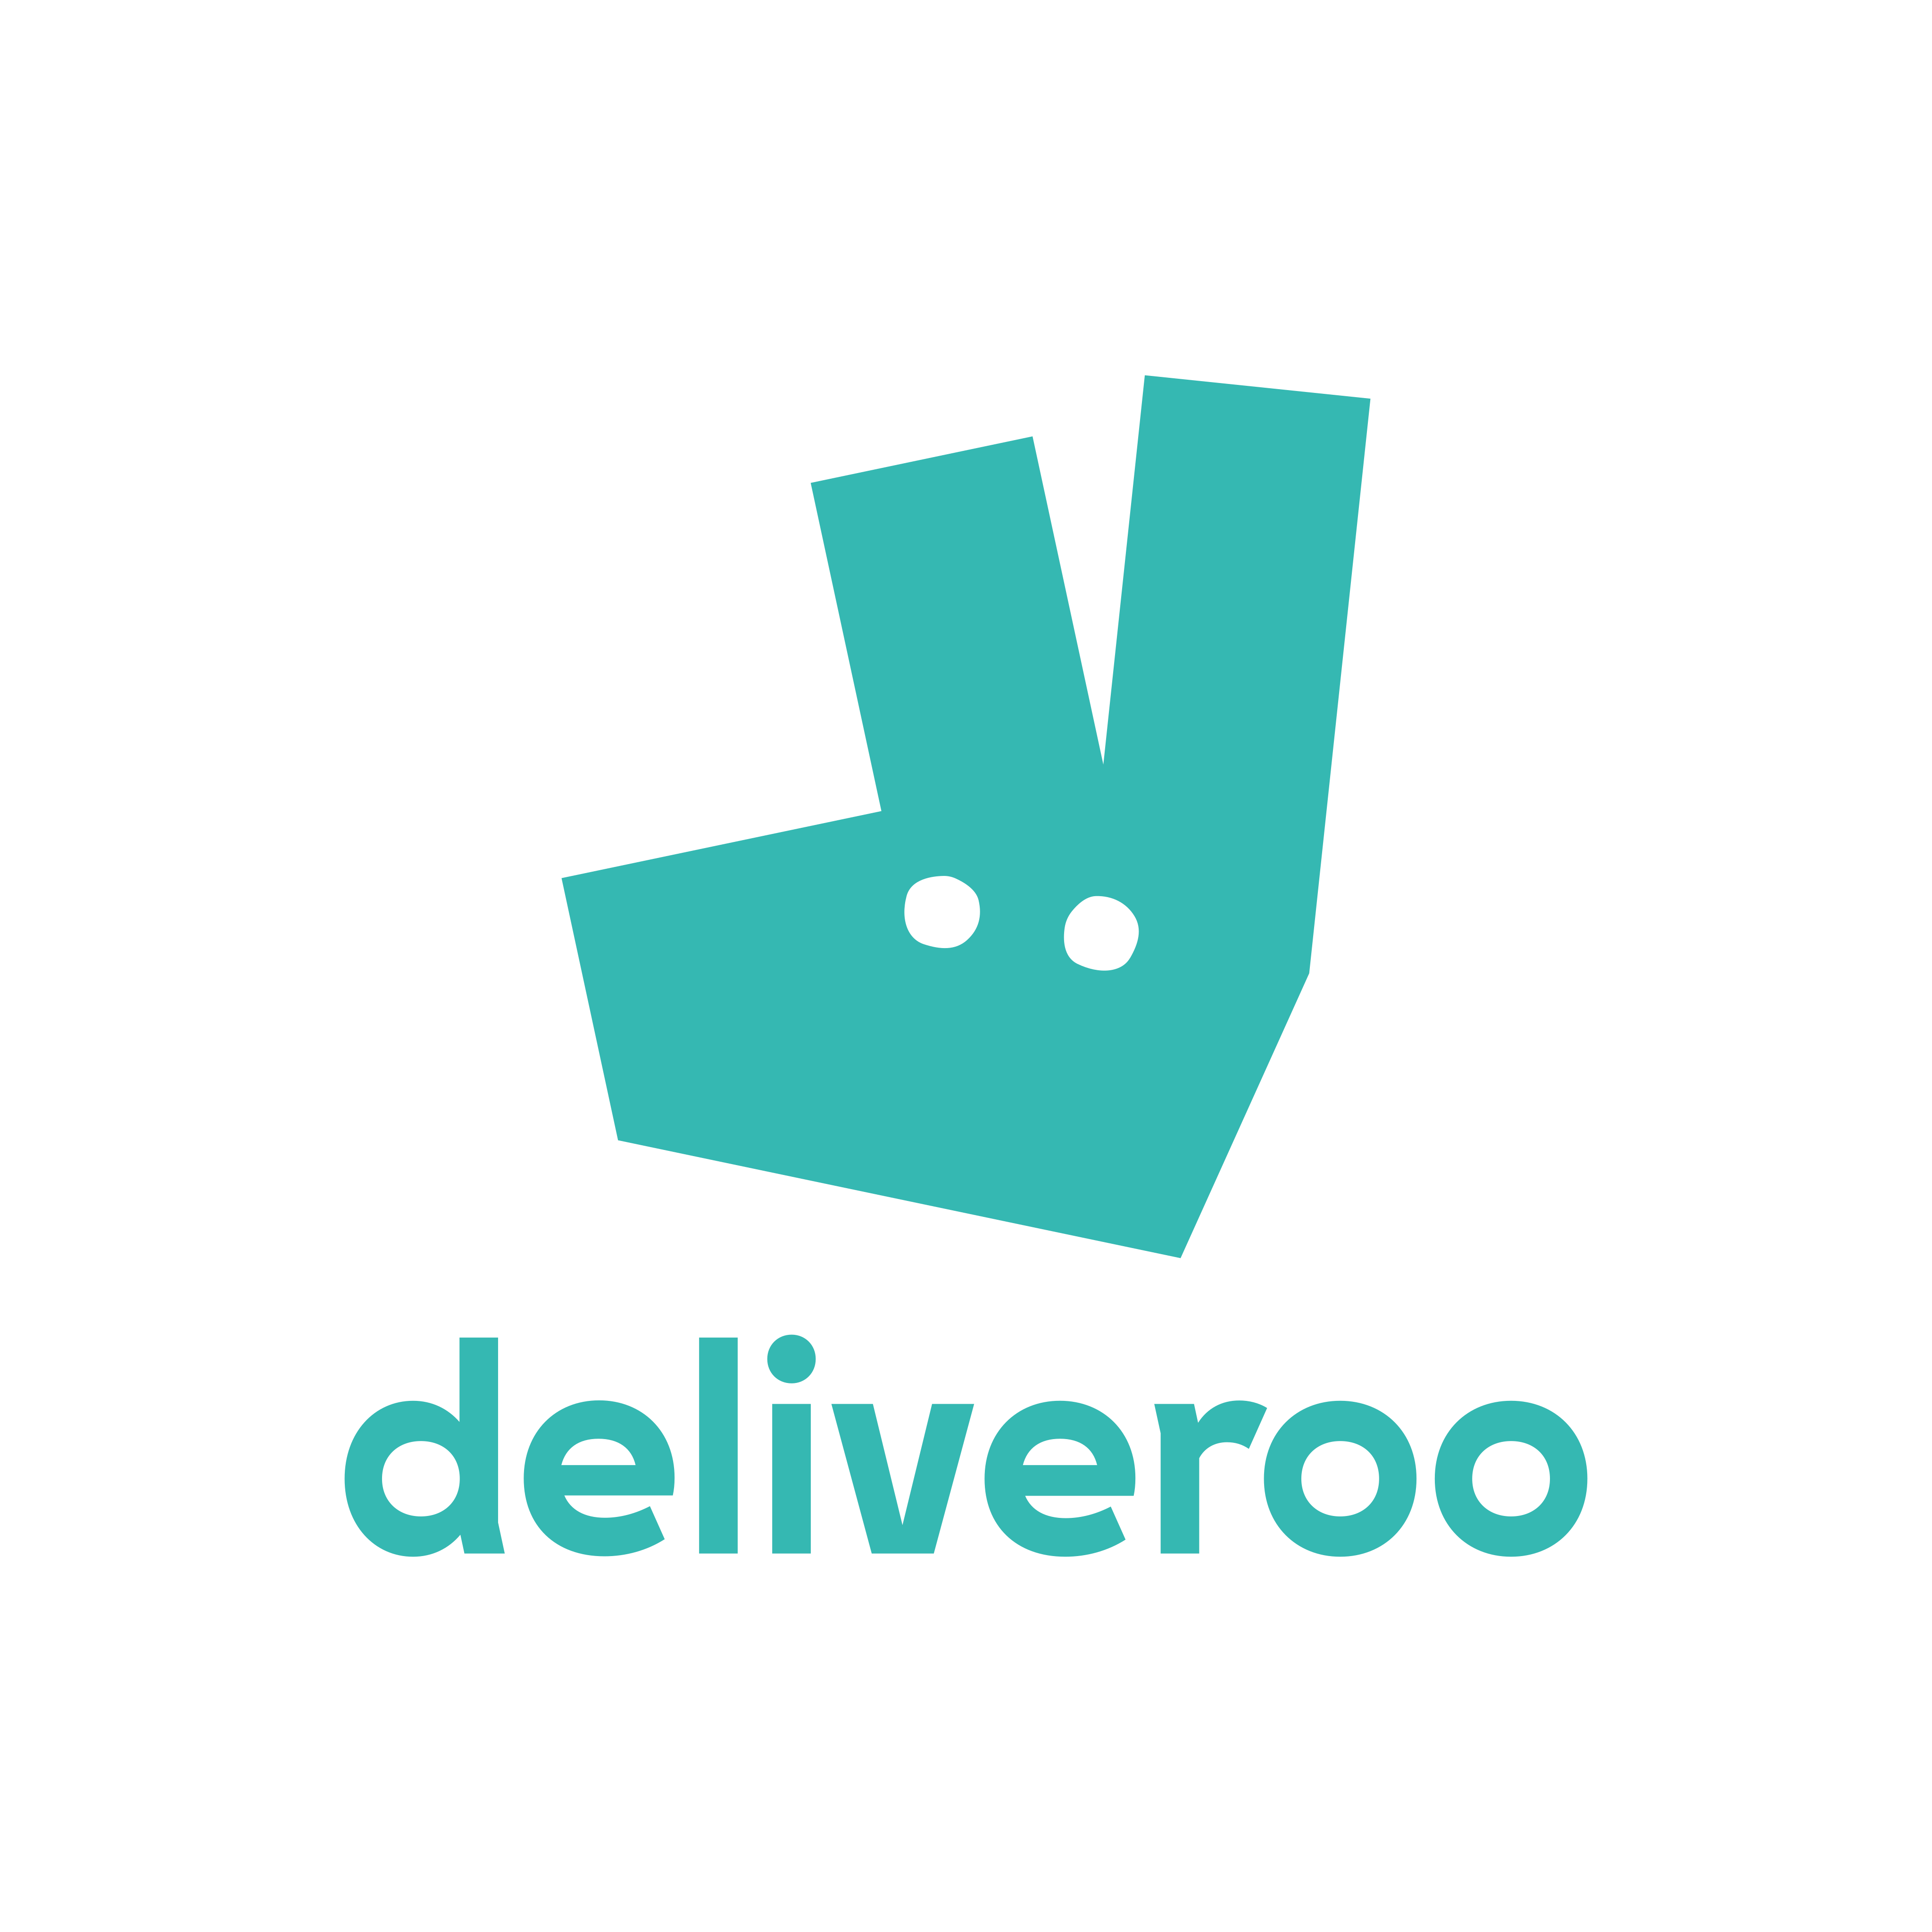 deliveroo logo 0 - Deliveroo Logo